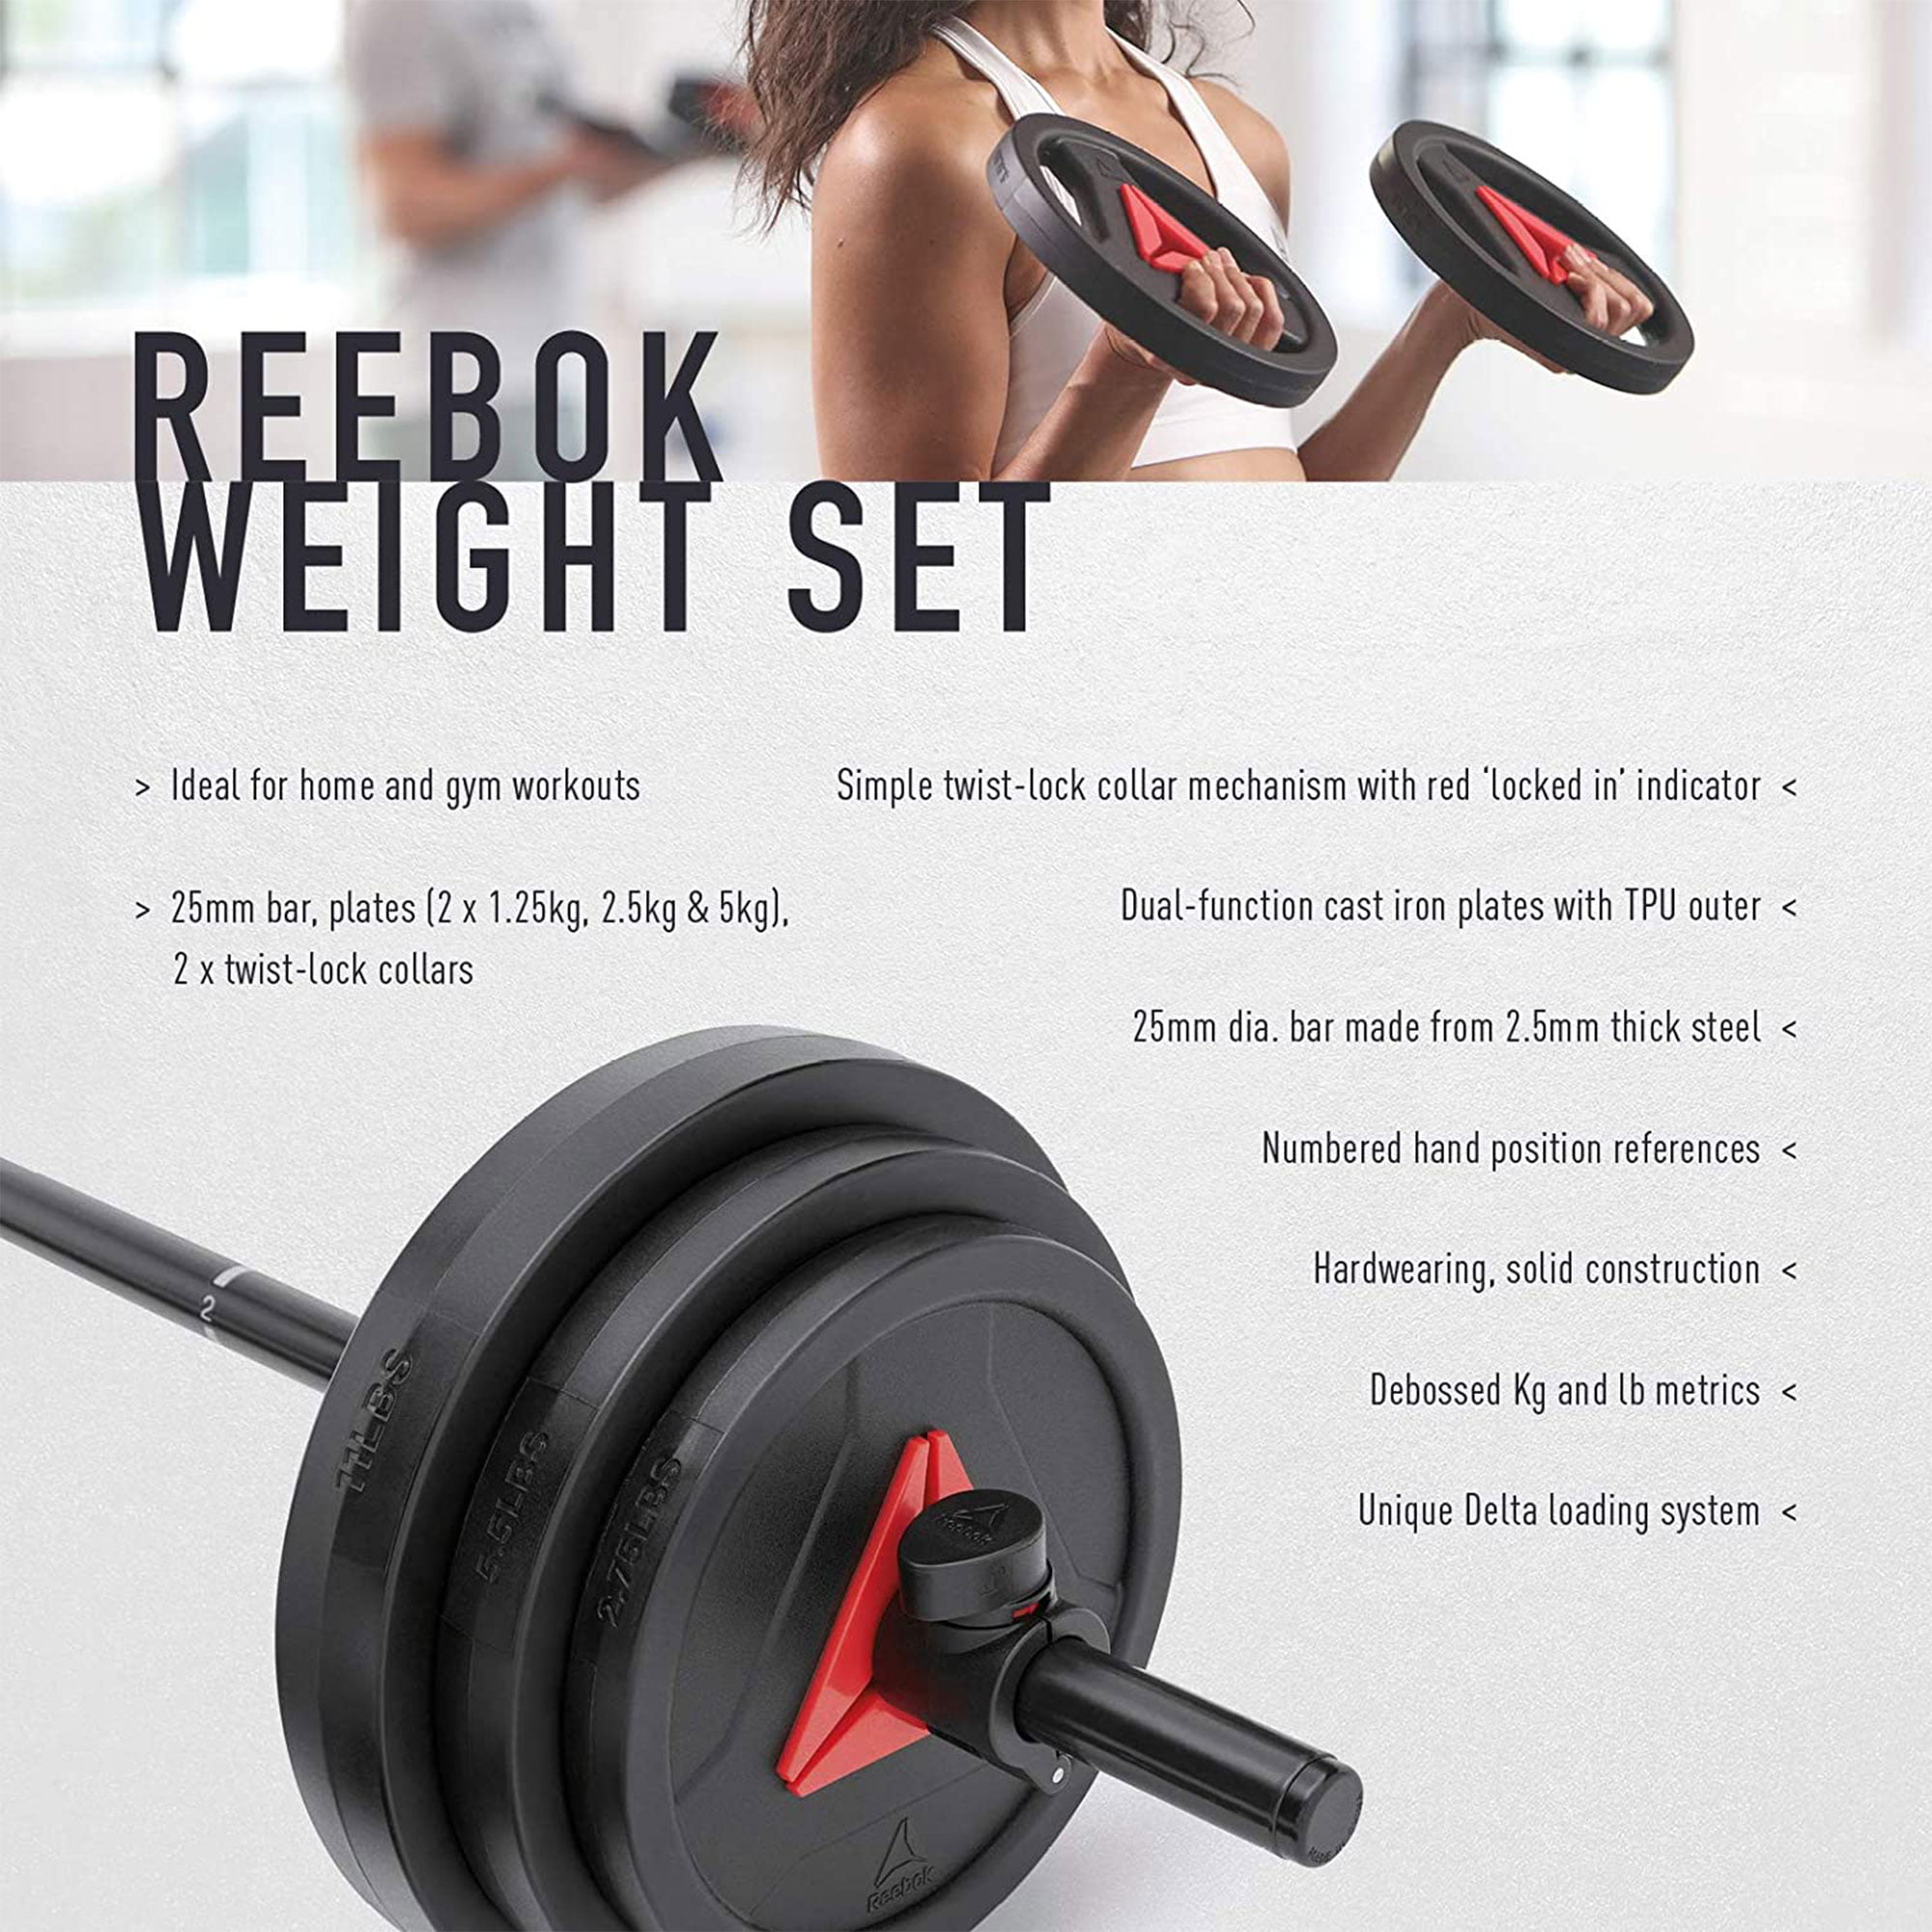 målbar Gå vandreture fødselsdag Reebok RSWT-16091 Home Gym Exercise Weight Set w/Pump Bar, 88 Pounds, Black  - Walmart.com